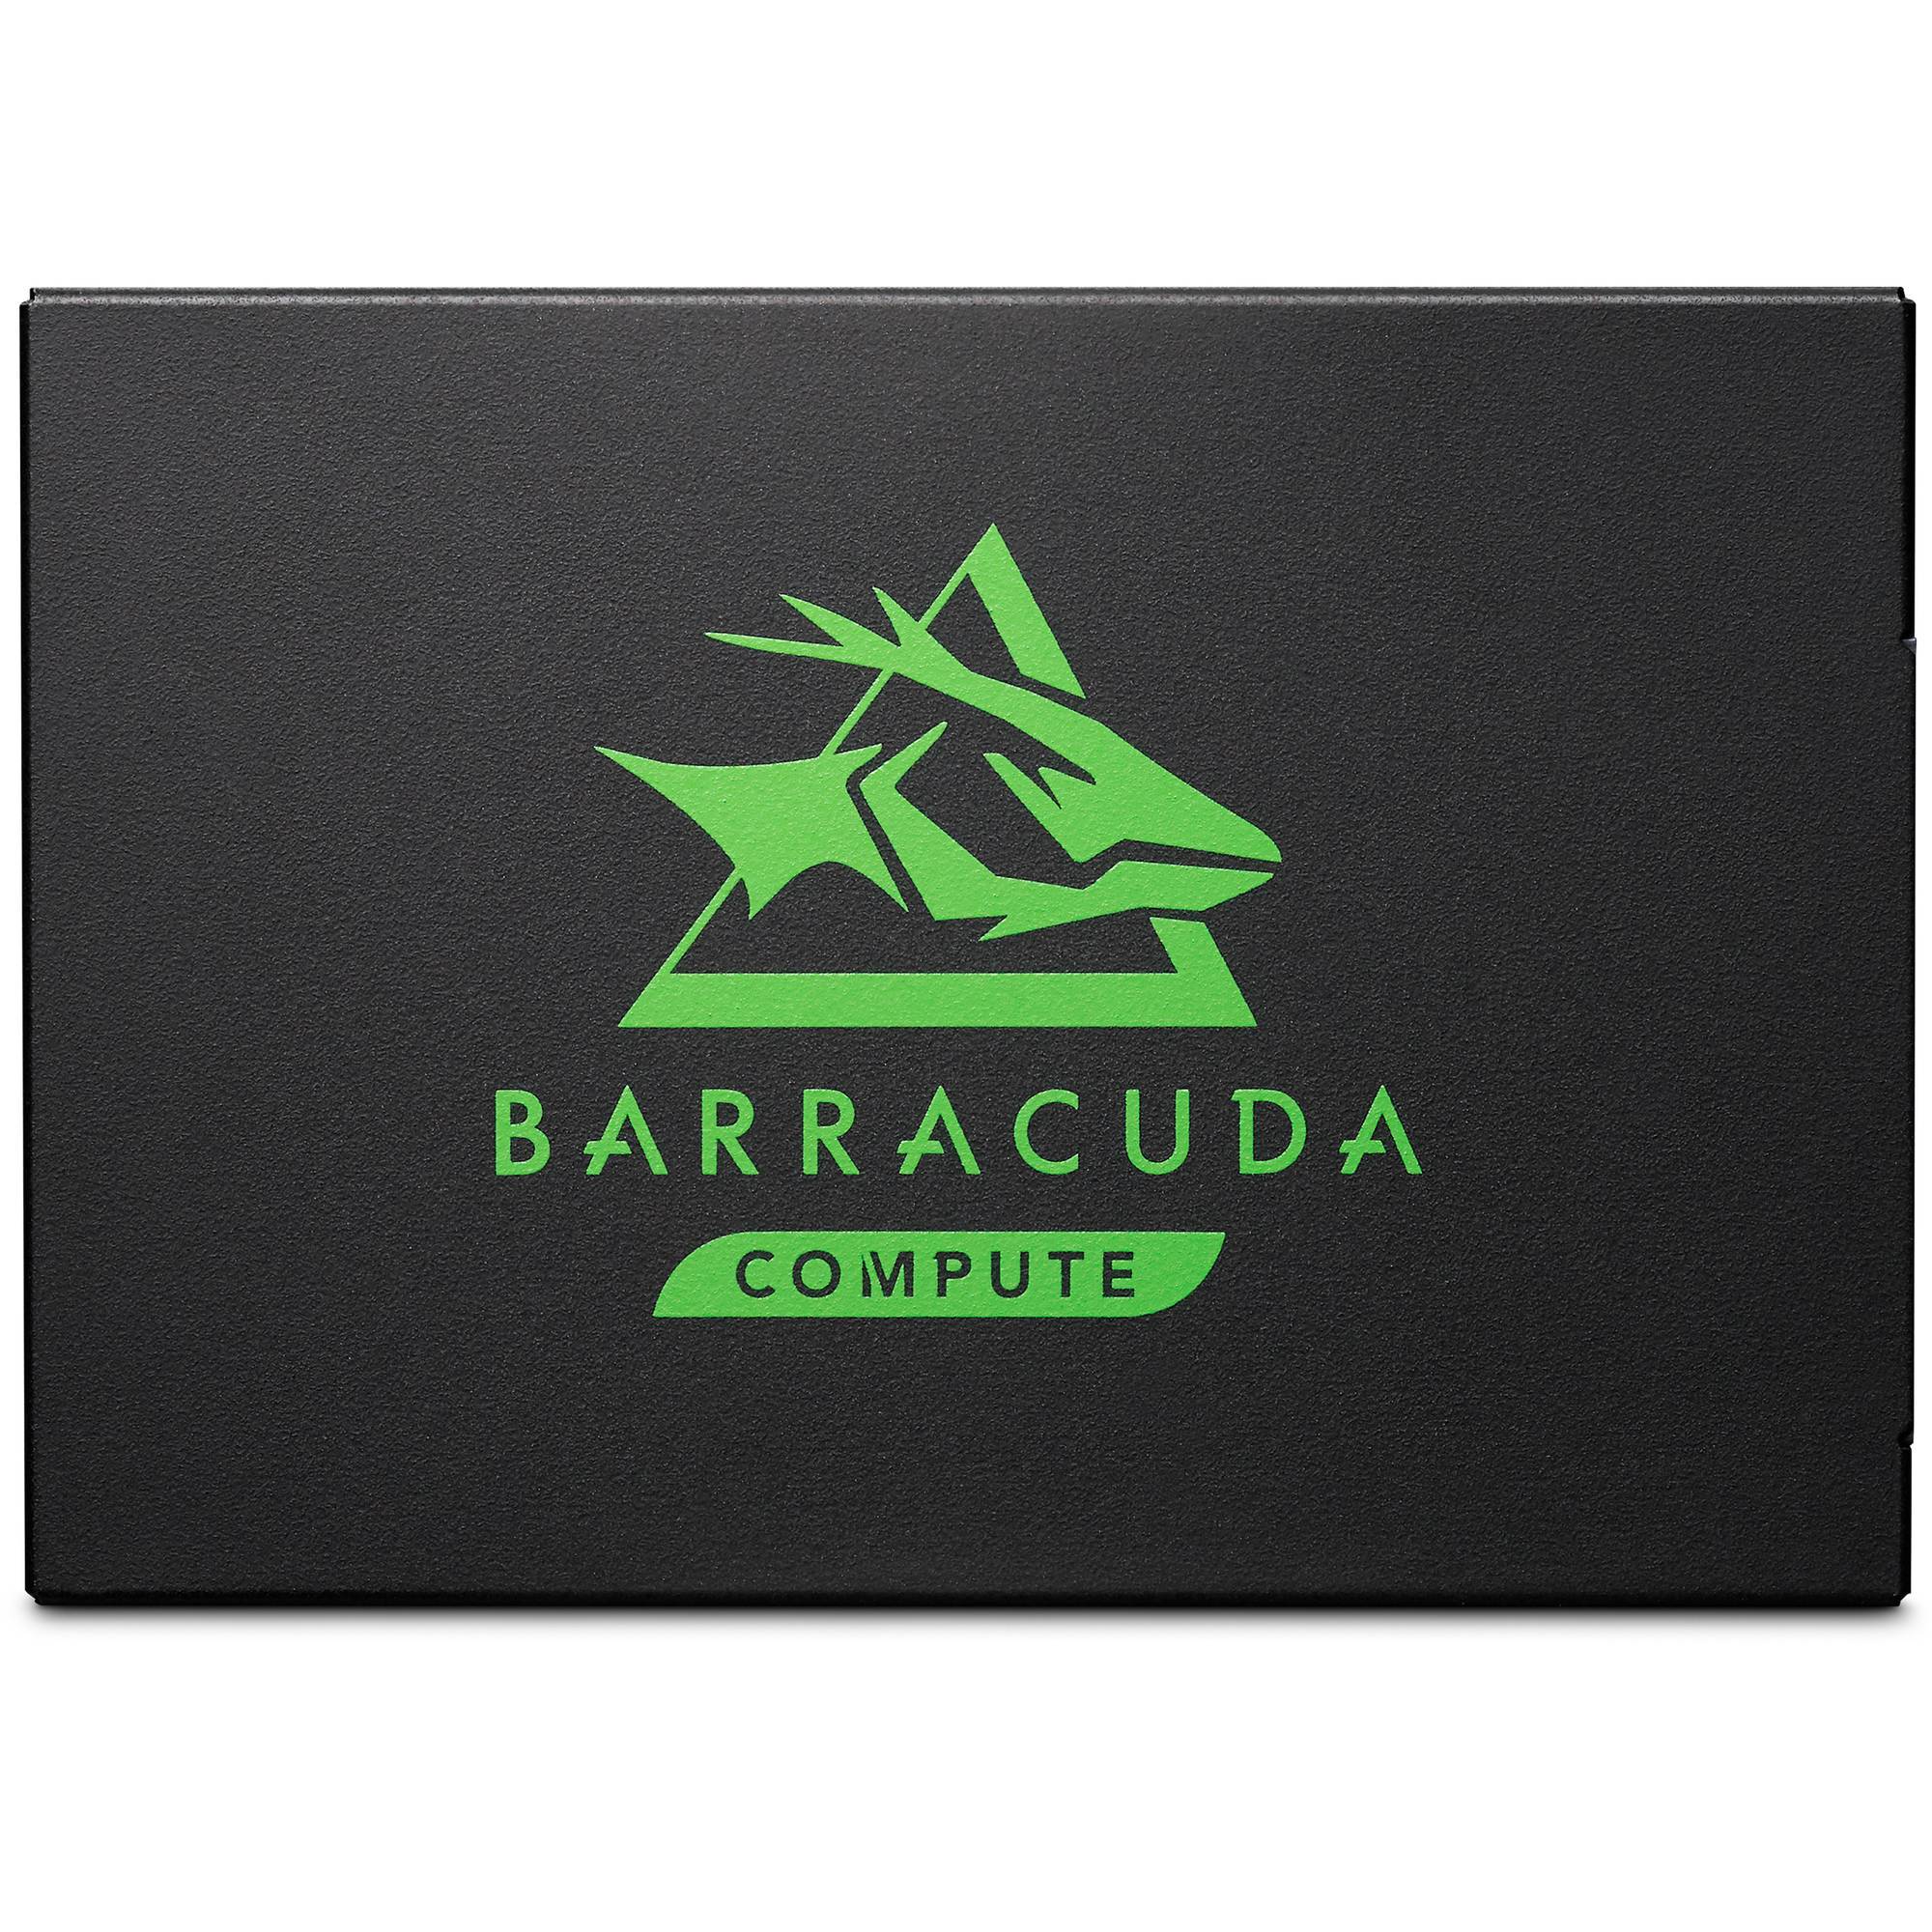 Seagate BarraCuda 120 ZA500CM10003 500GB SATA 6Gb/s 2.5in Solid State Drive